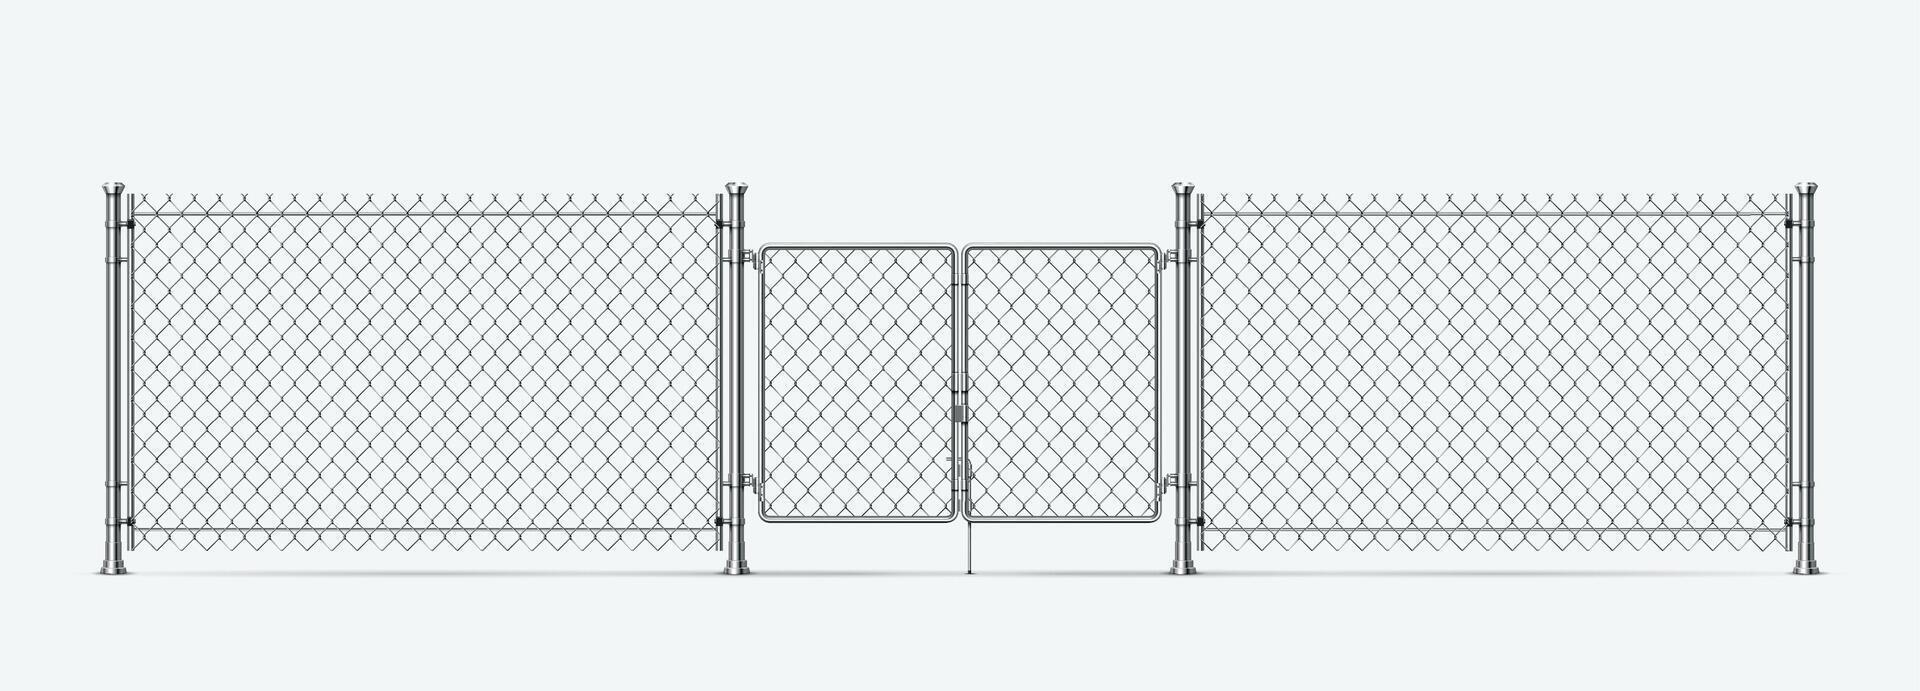 realista aço fio cerca com portões e metal colunas. barreira cadeia ligação malha com porta. 3d prisão ou militares fio fronteira vetor elemento